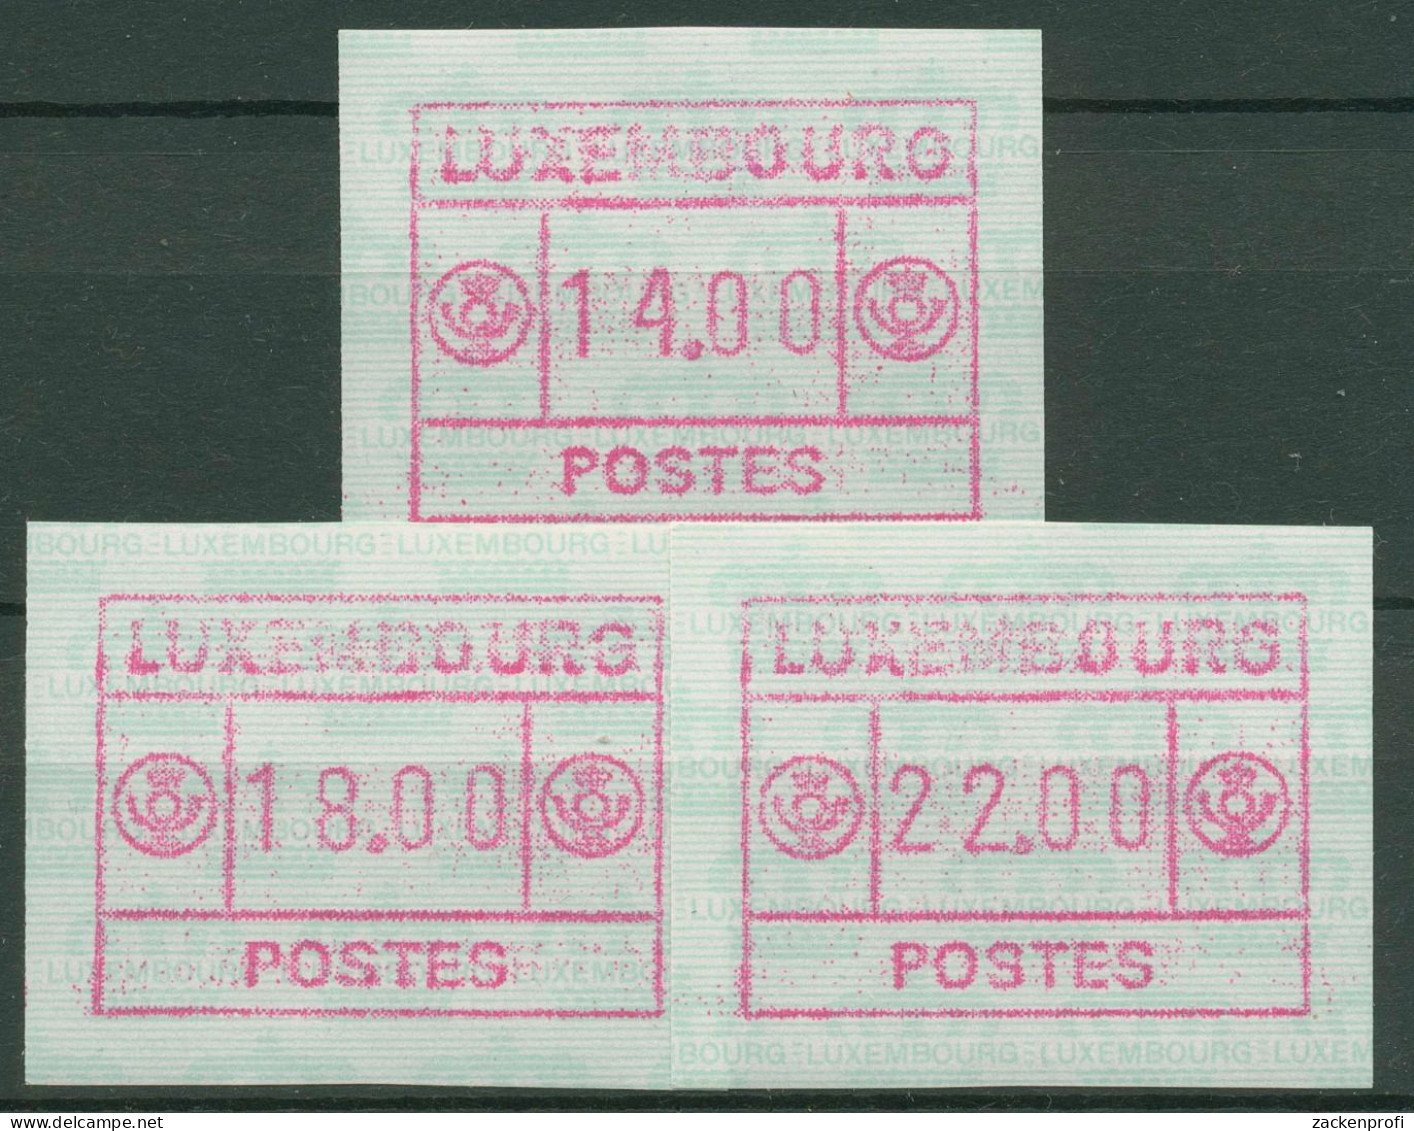 Luxemburg ATM 1992 Automatenmarke Kronen Satz 3 Werte ATM 2c S2 Postfrisch - Postage Labels